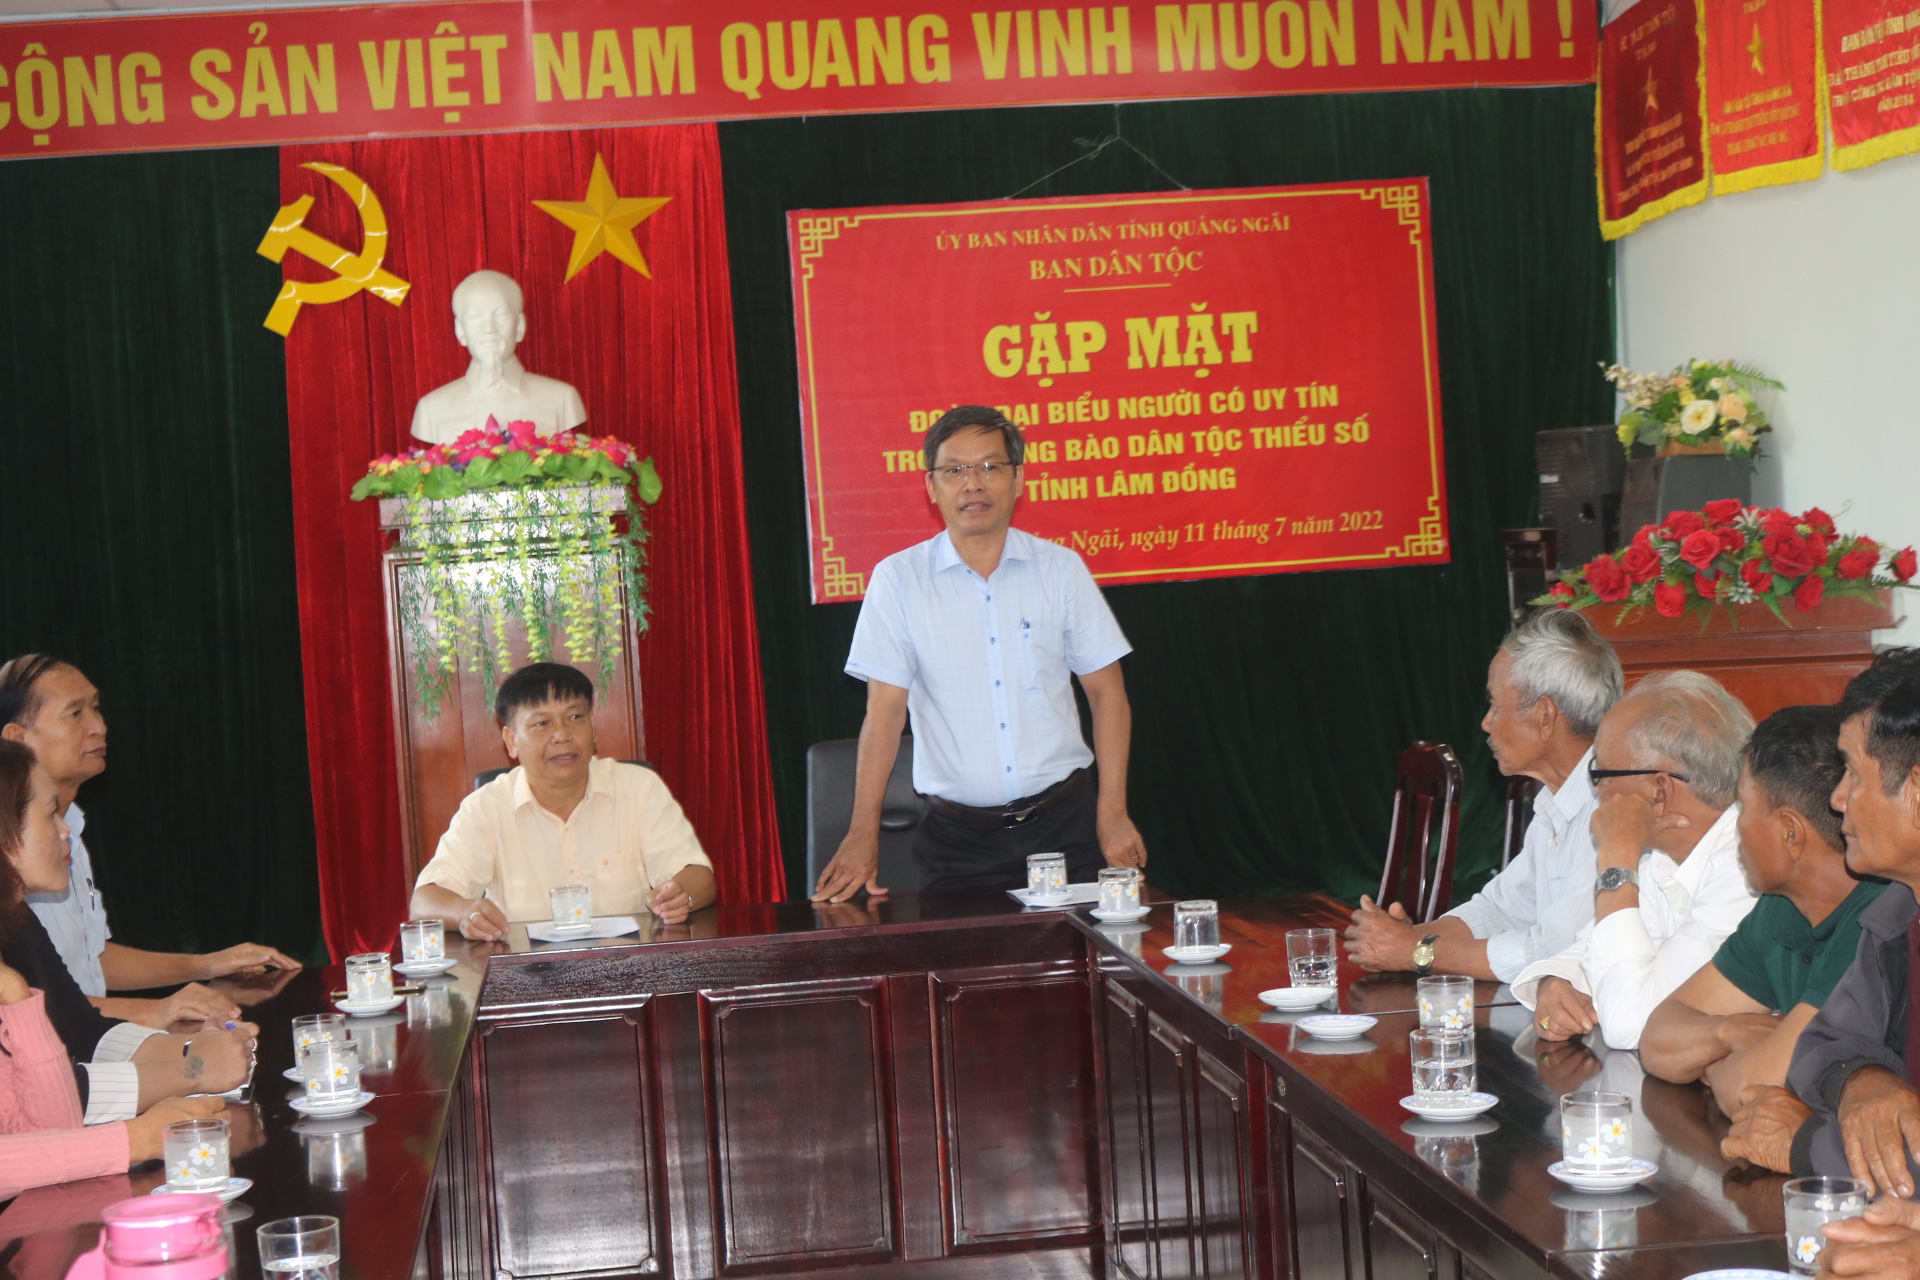 Lãnh đạo Ban Dân tộc tiếp và làm việc với Đoàn đại biểu người có uy tín tỉnh Lâm Đồng